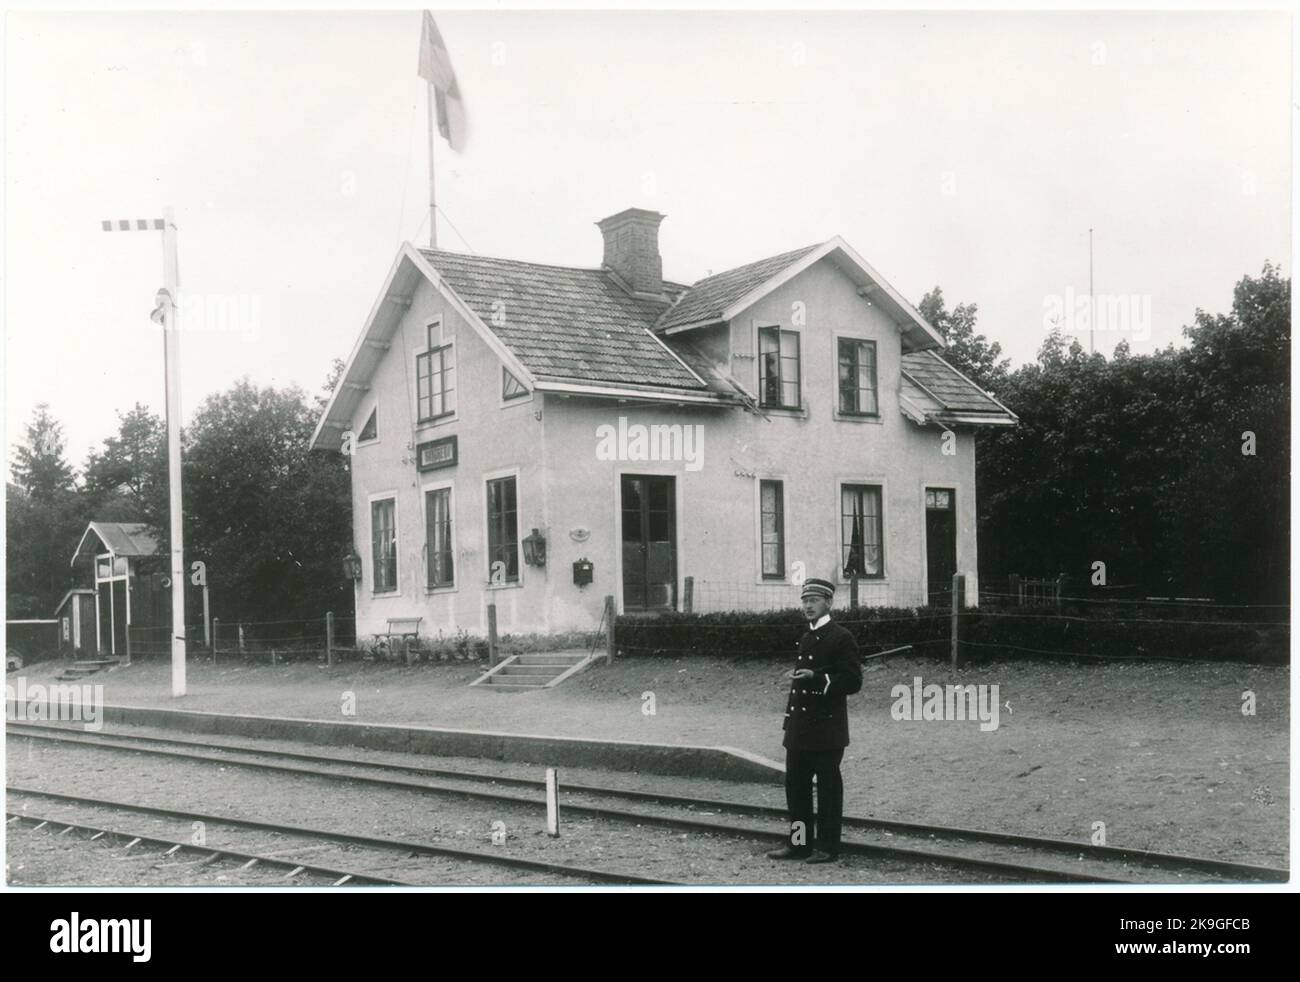 Der Bahnhof wurde 1895 für den öffentlichen Verkehr eröffnet. Eineinhalb-stöckiges Stationshaus aus Holz. Nach einem Brand im Jahr 1902 wurde ein neues Bahnhofshaus errichtet. Im Laufe der Jahre wurde der Bahnhof mehrmals modernisiert. Aufgrund des reduzierten Verkehrs wurde der Bahnhof 1984 geschlossen. Auf dem Foto, Stationsmeister J.W. Sjöholm. Stockfoto